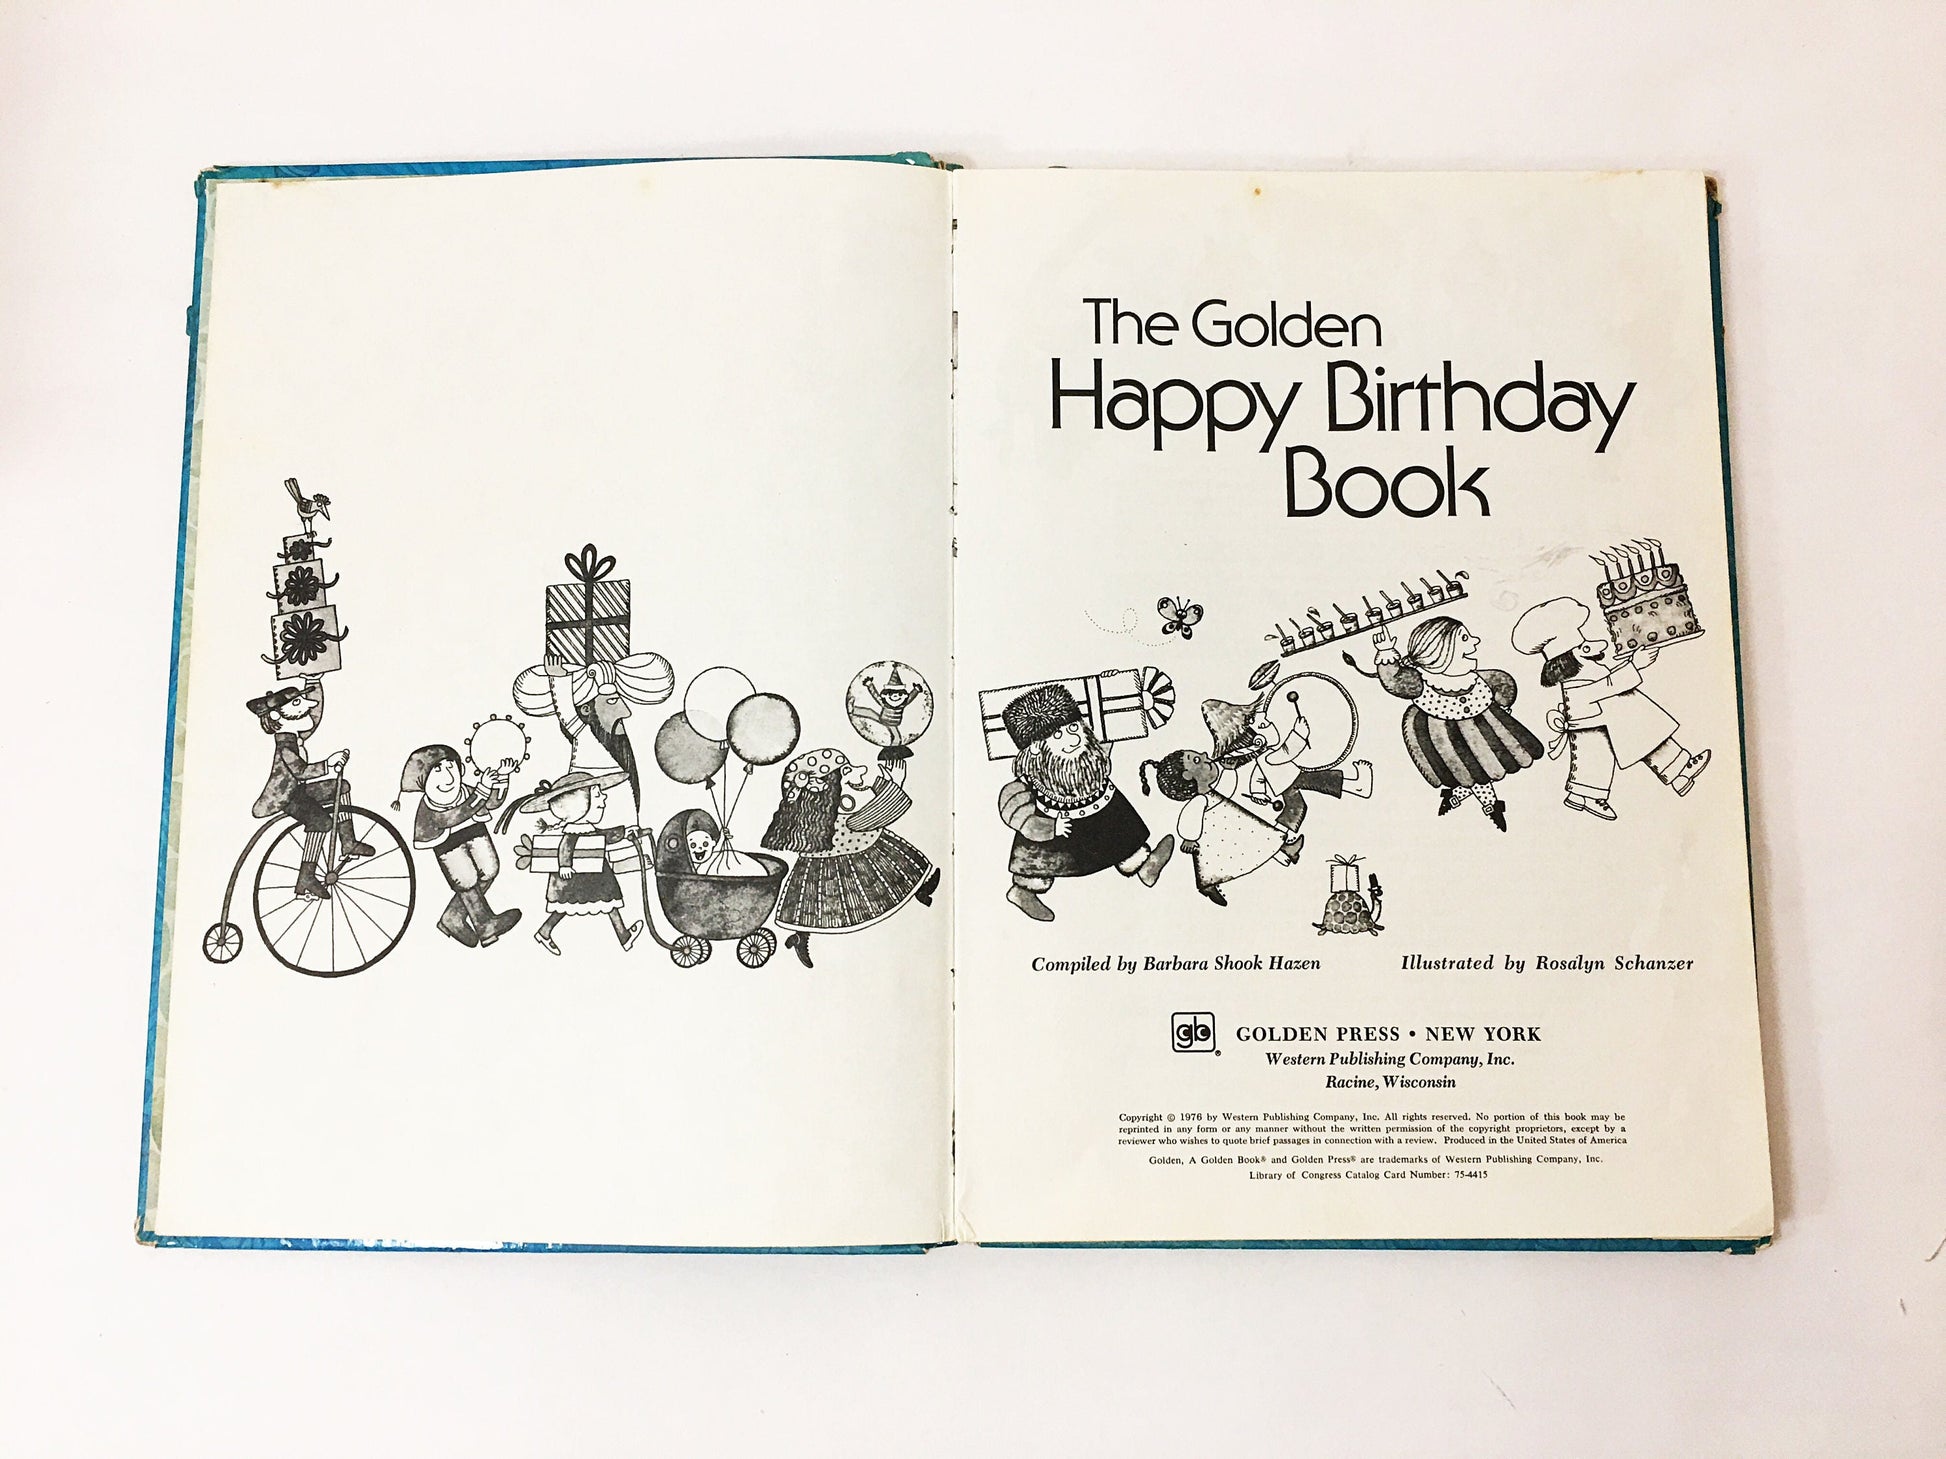 1976 Golden Happy Birthday Book vintage FIRST EDITION by Barbara Shook Hazen circa 1976. Children's Big Golden Book Deluxe.